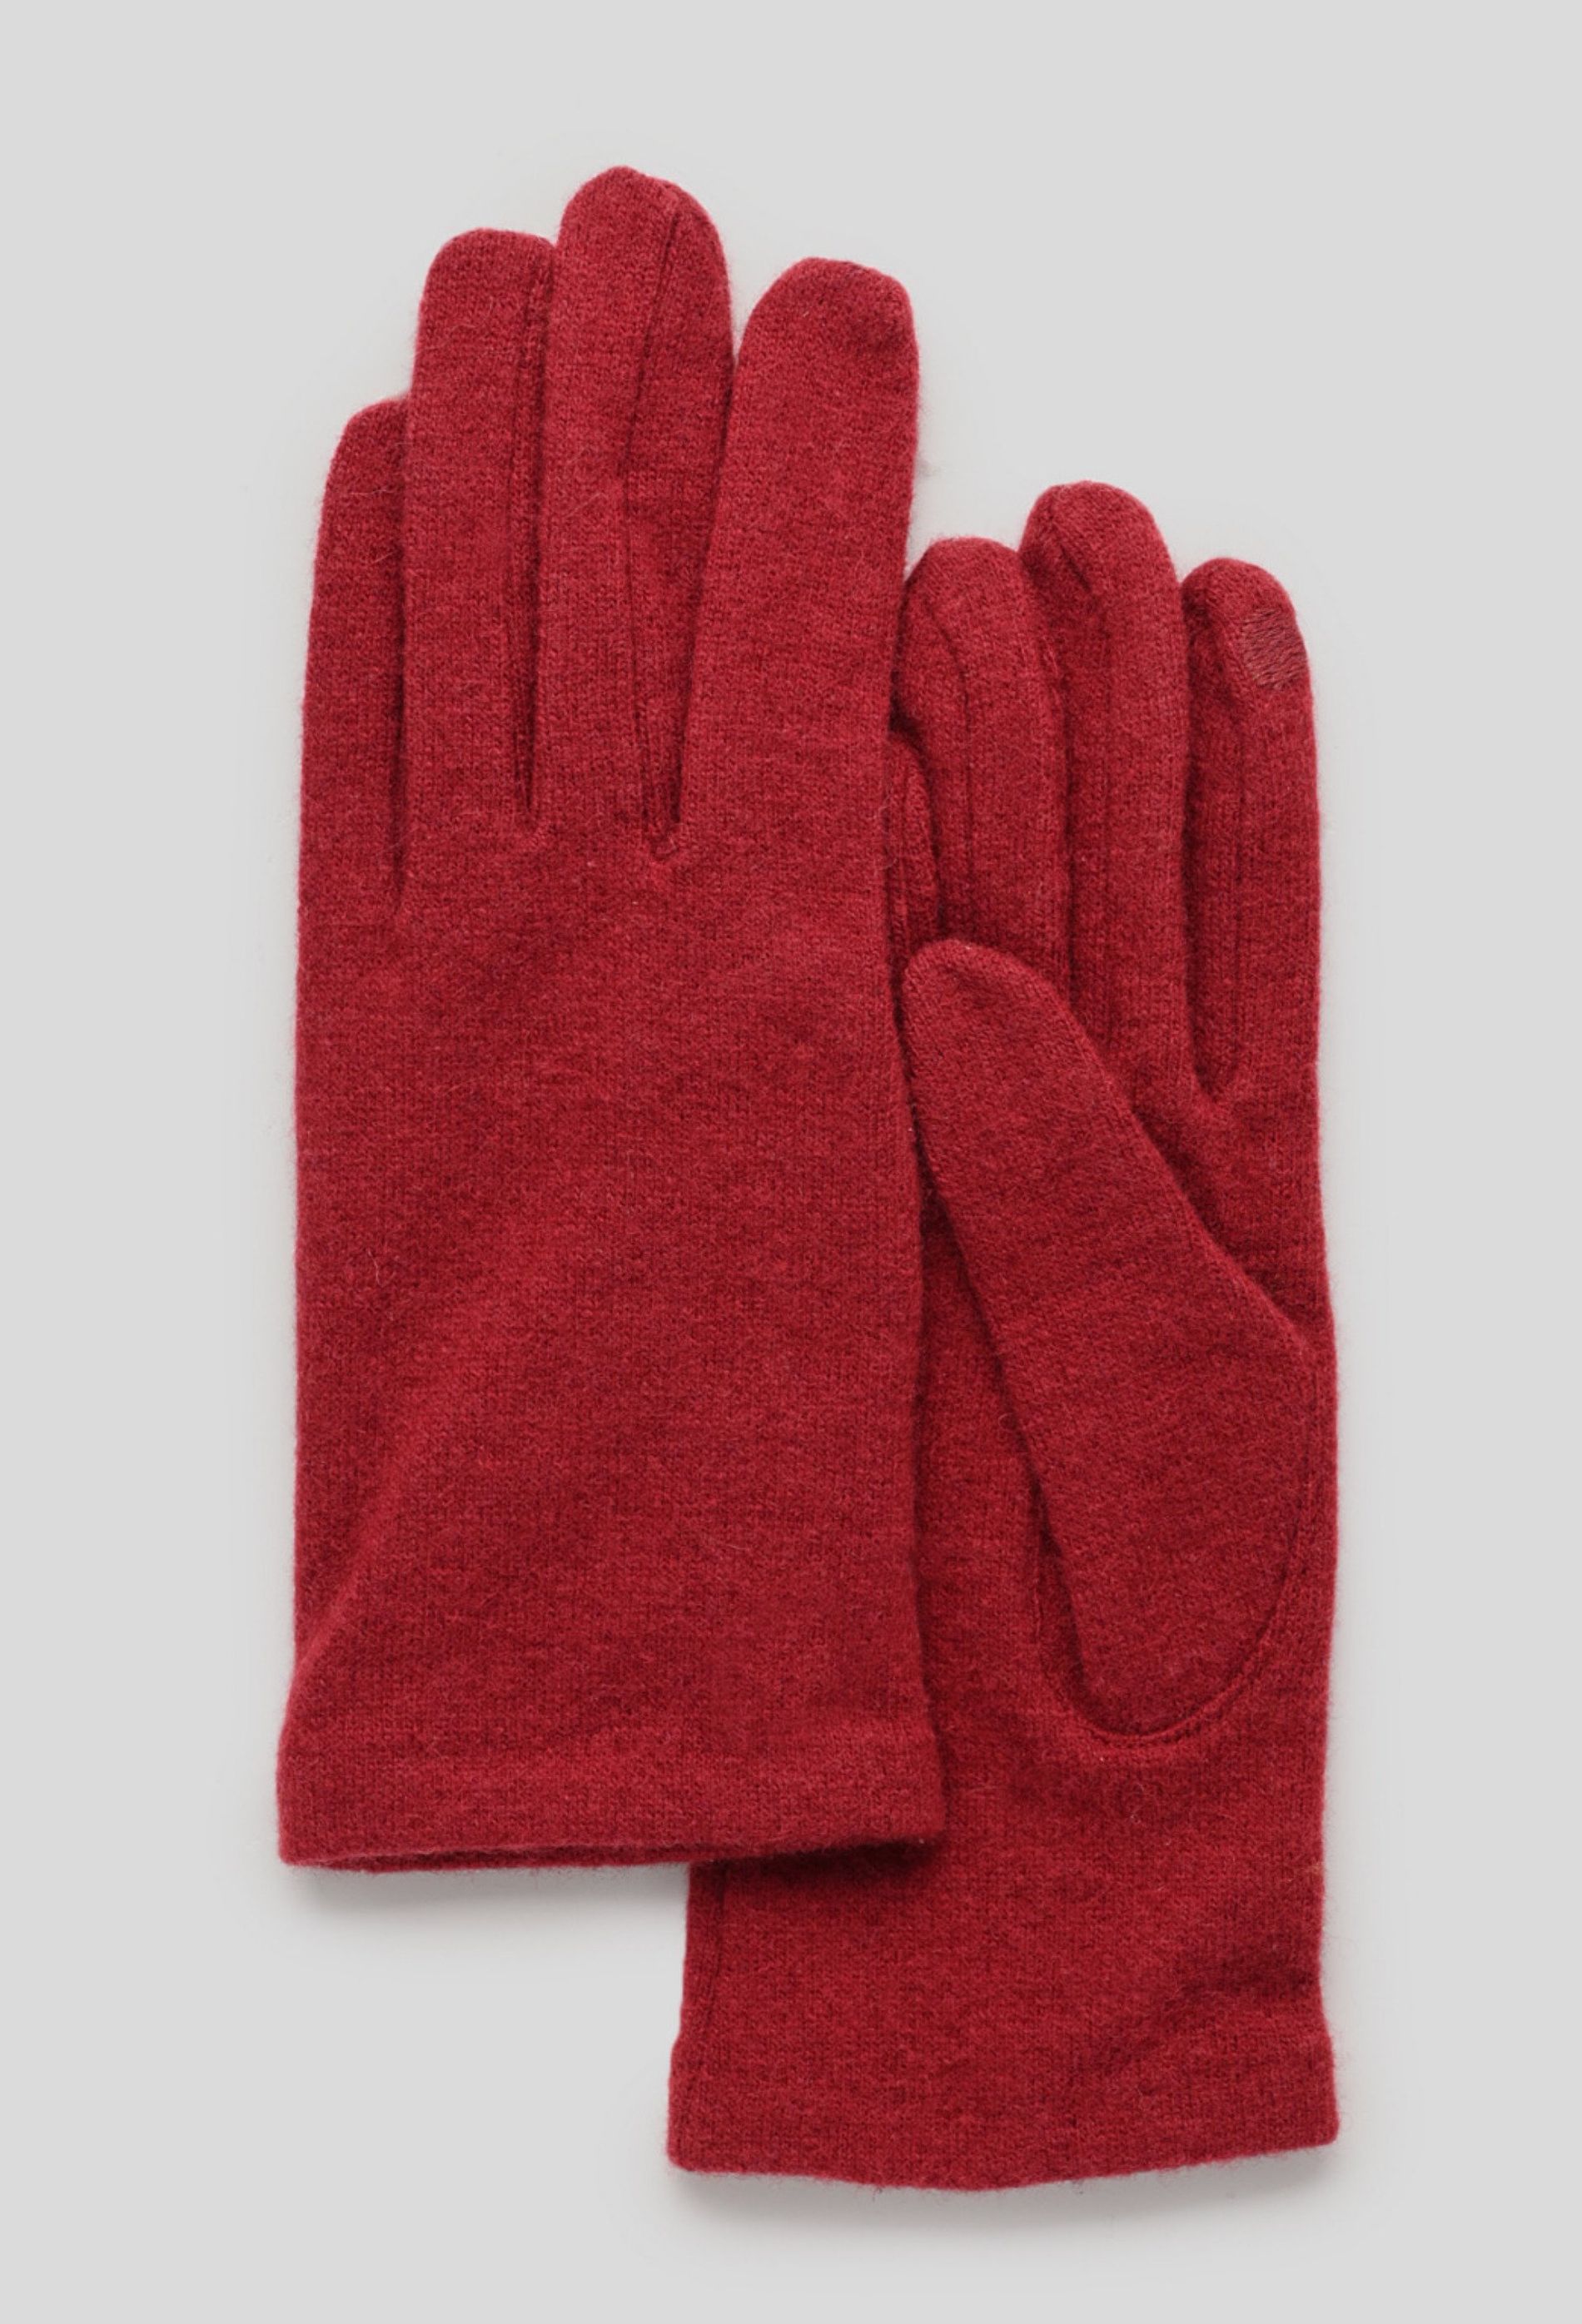 gants tactiles en laine et microfibre pour femme. Modèle CHIMÈRE.